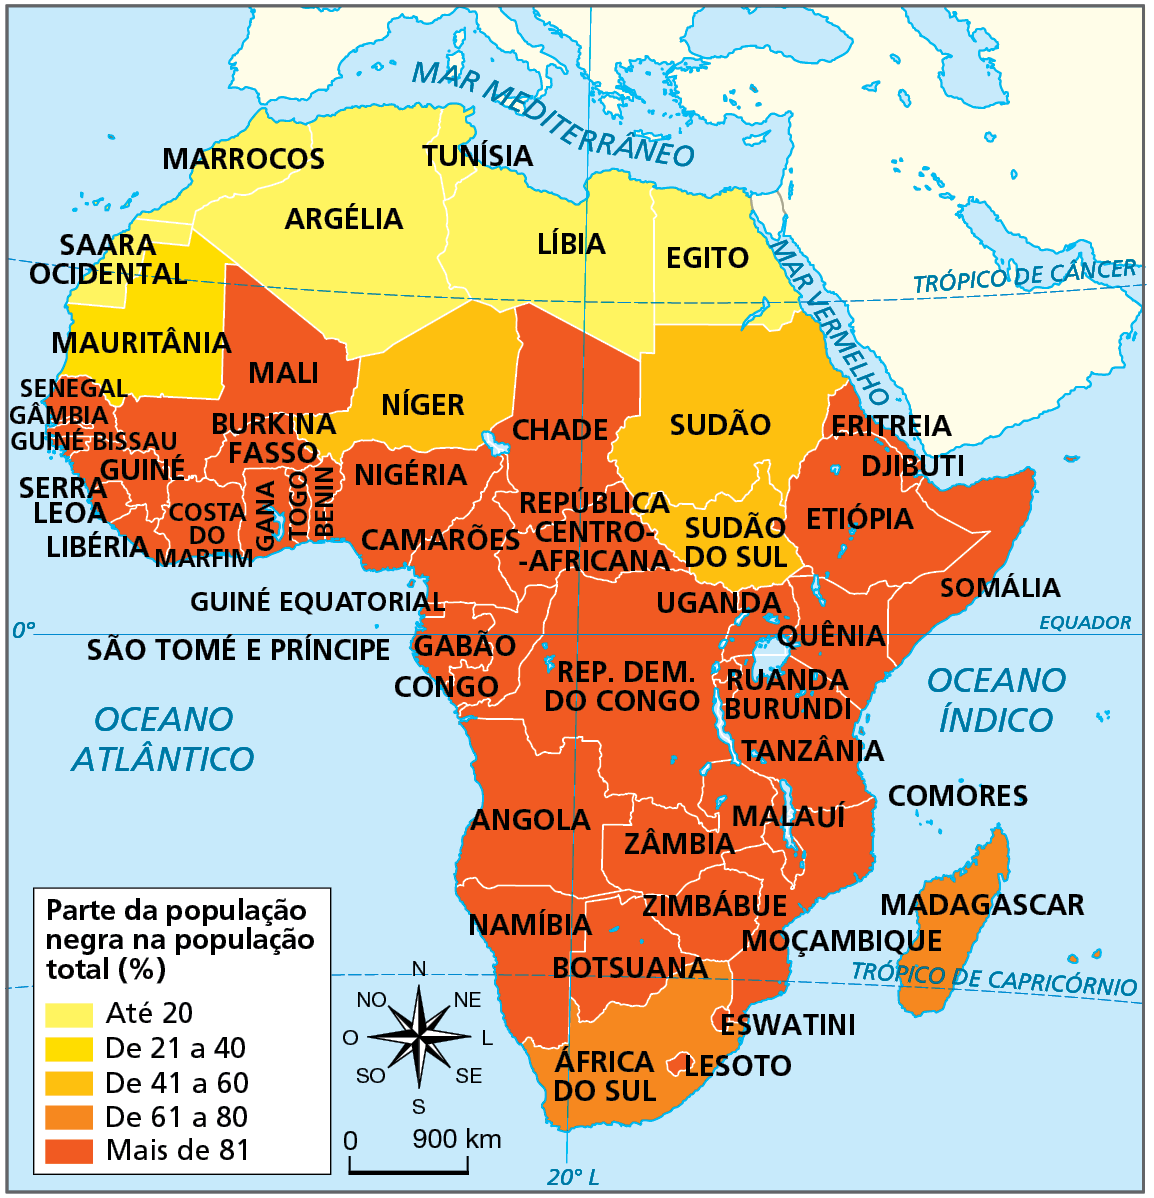 Mapa. África: participação da população negra na população total (em porcentagem) - 2019. Mapa do continente africano representando a parte da população negra em relação total da população de cada país, em porcentagem. Até 20 por cento: Saara Ocidental, Marrocos, Argélia, Tunísia, Líbia, Egito De 21 a 40 por cento: Mauritânia. De 41 a 60 por cento: Níger, Sudão, Sudão do Sul. De 61 a 80 por cento: África do Sul e Madagascar. Mais de 81 por cento: Mali, Senegal, Gâmbia, Guiné Bissau, Guiné, Serra Leoa, Libéria, Costa do Marfim, Gana, Burkina Fasso, Togo, Benin, Nigéria, Camarões, Chade, República Centro-Africana, Eritreia, Djibouti, Etiópia, Somália, Guiné Equatorial, Gabão, Congo, República Democrática do Congo, Uganda, Quênia, Ruanda, Burundi, Tanzânia, Angola, Zâmbia, Malauí, Moçambique, Namíbia, Botsuana e  Zimbábue. A esquerda e abaixo, a rosa dos ventos e a escala de zero a 900 quilômetros.